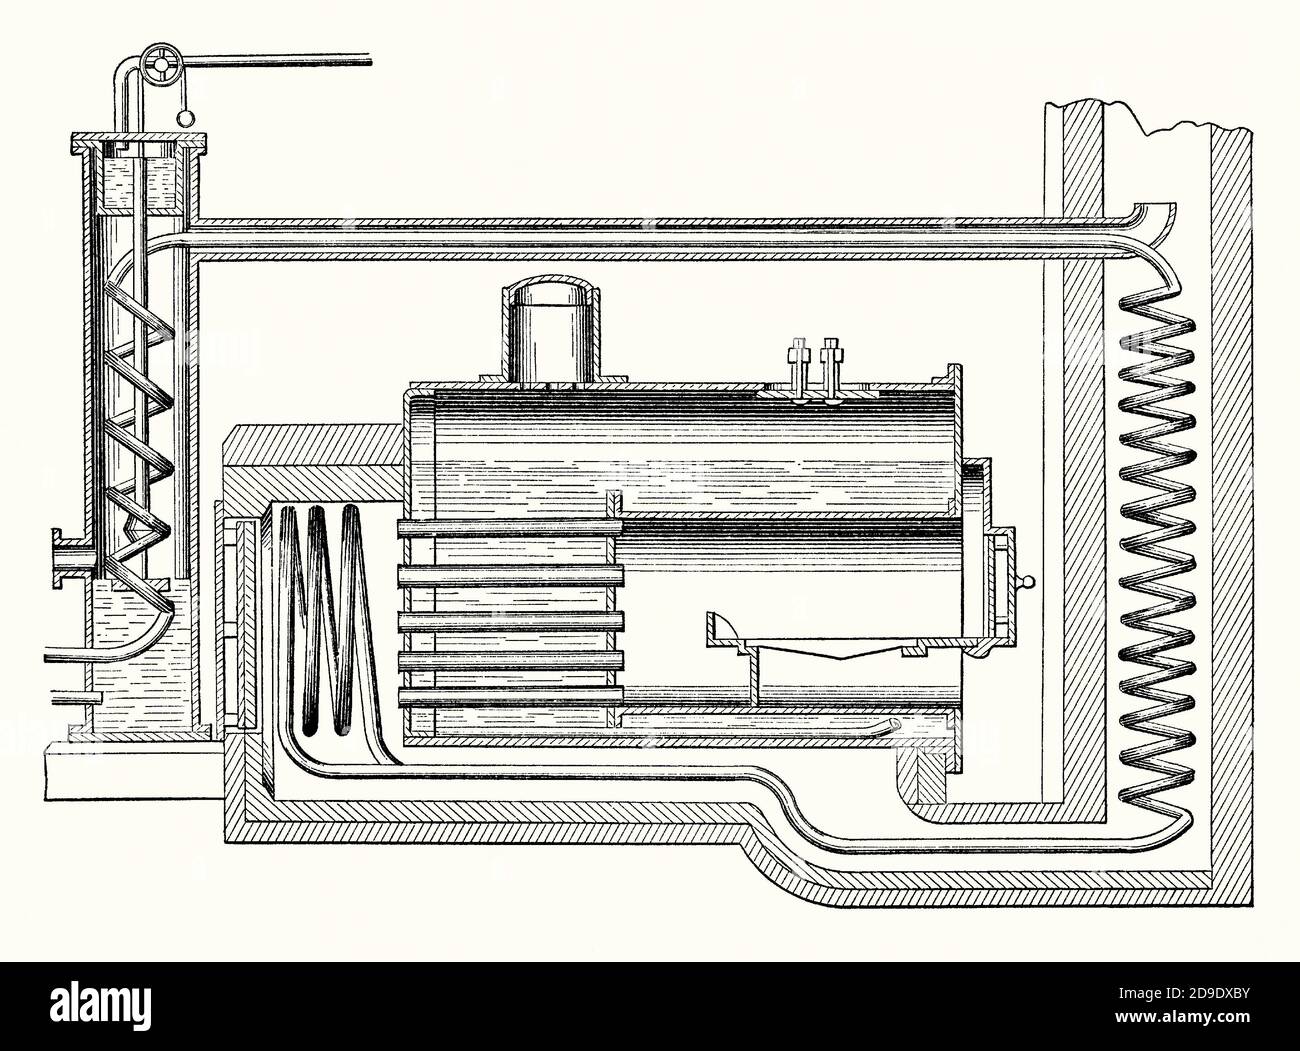 Una vecchia incisione del motore aerovapore Warsop risalente alla metà del 1800. E 'da un libro di ingegneria meccanica vittoriana del 1880. Lo scopo di un motore aerovapore era quello di miscelare l'aria con il vapore, di economizzare il combustibile necessario per generare energia. Ciò migliorava il motore di Watt del 1700. Il design di Watt è diventato sinonimo di vapore: Erano anni prima che le modifiche iniziassero a migliorare il suo design. George Warsop di Nottingham, Inghilterra, ha progettato un motore con tubi a spirale che forzano l'aria calda nella caldaia a generare vapore più uniformemente ed economicamente. Foto Stock